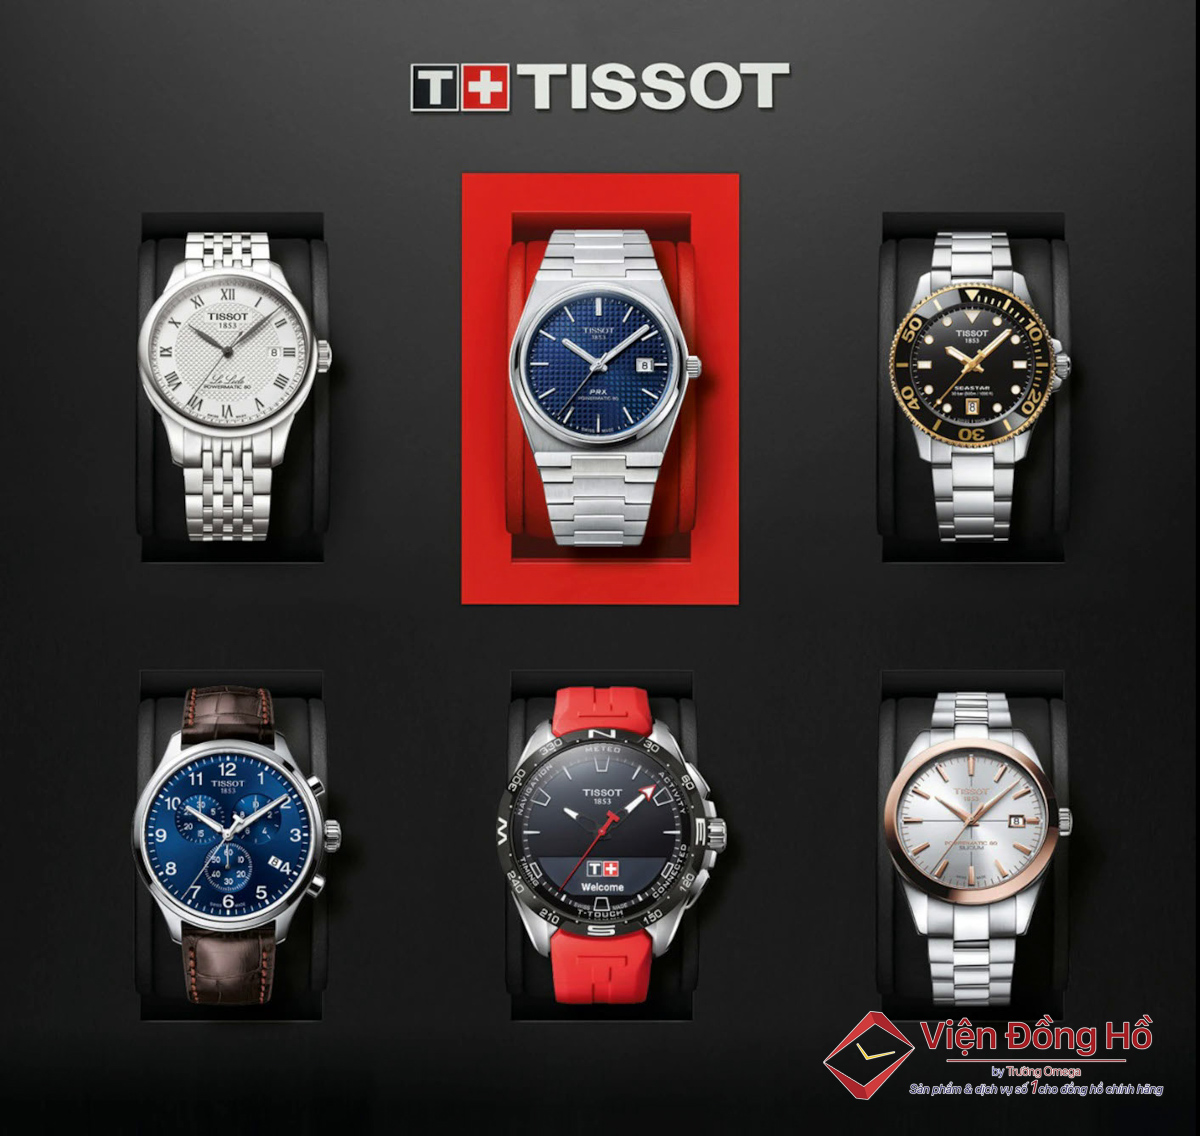 Các sản phẩm Tissot chính hãng đều thuộc phân khúc entry-luxury